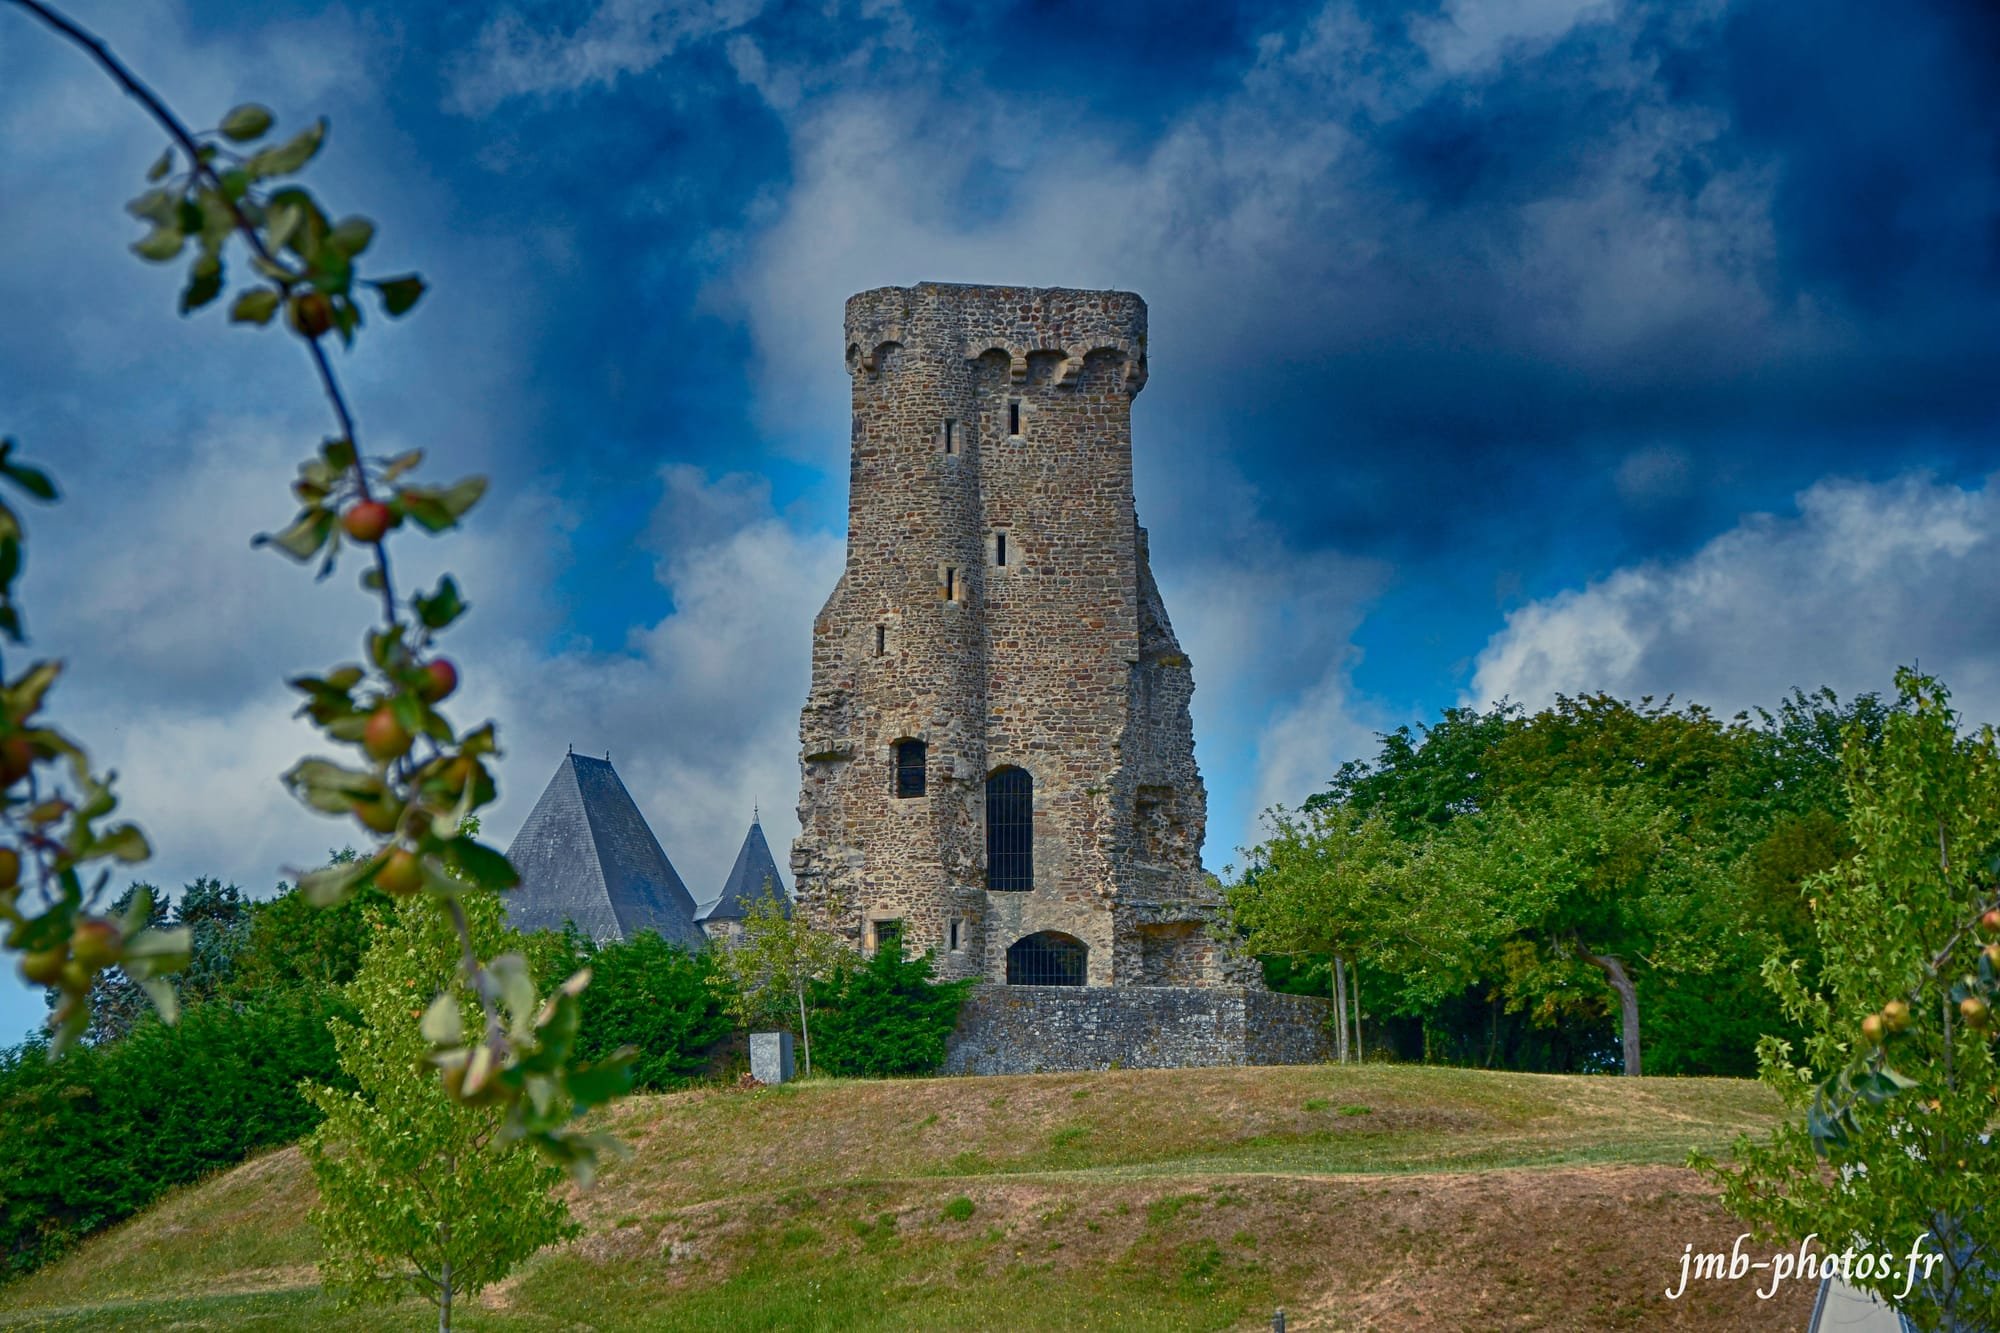 Le château de la Haye du Puits